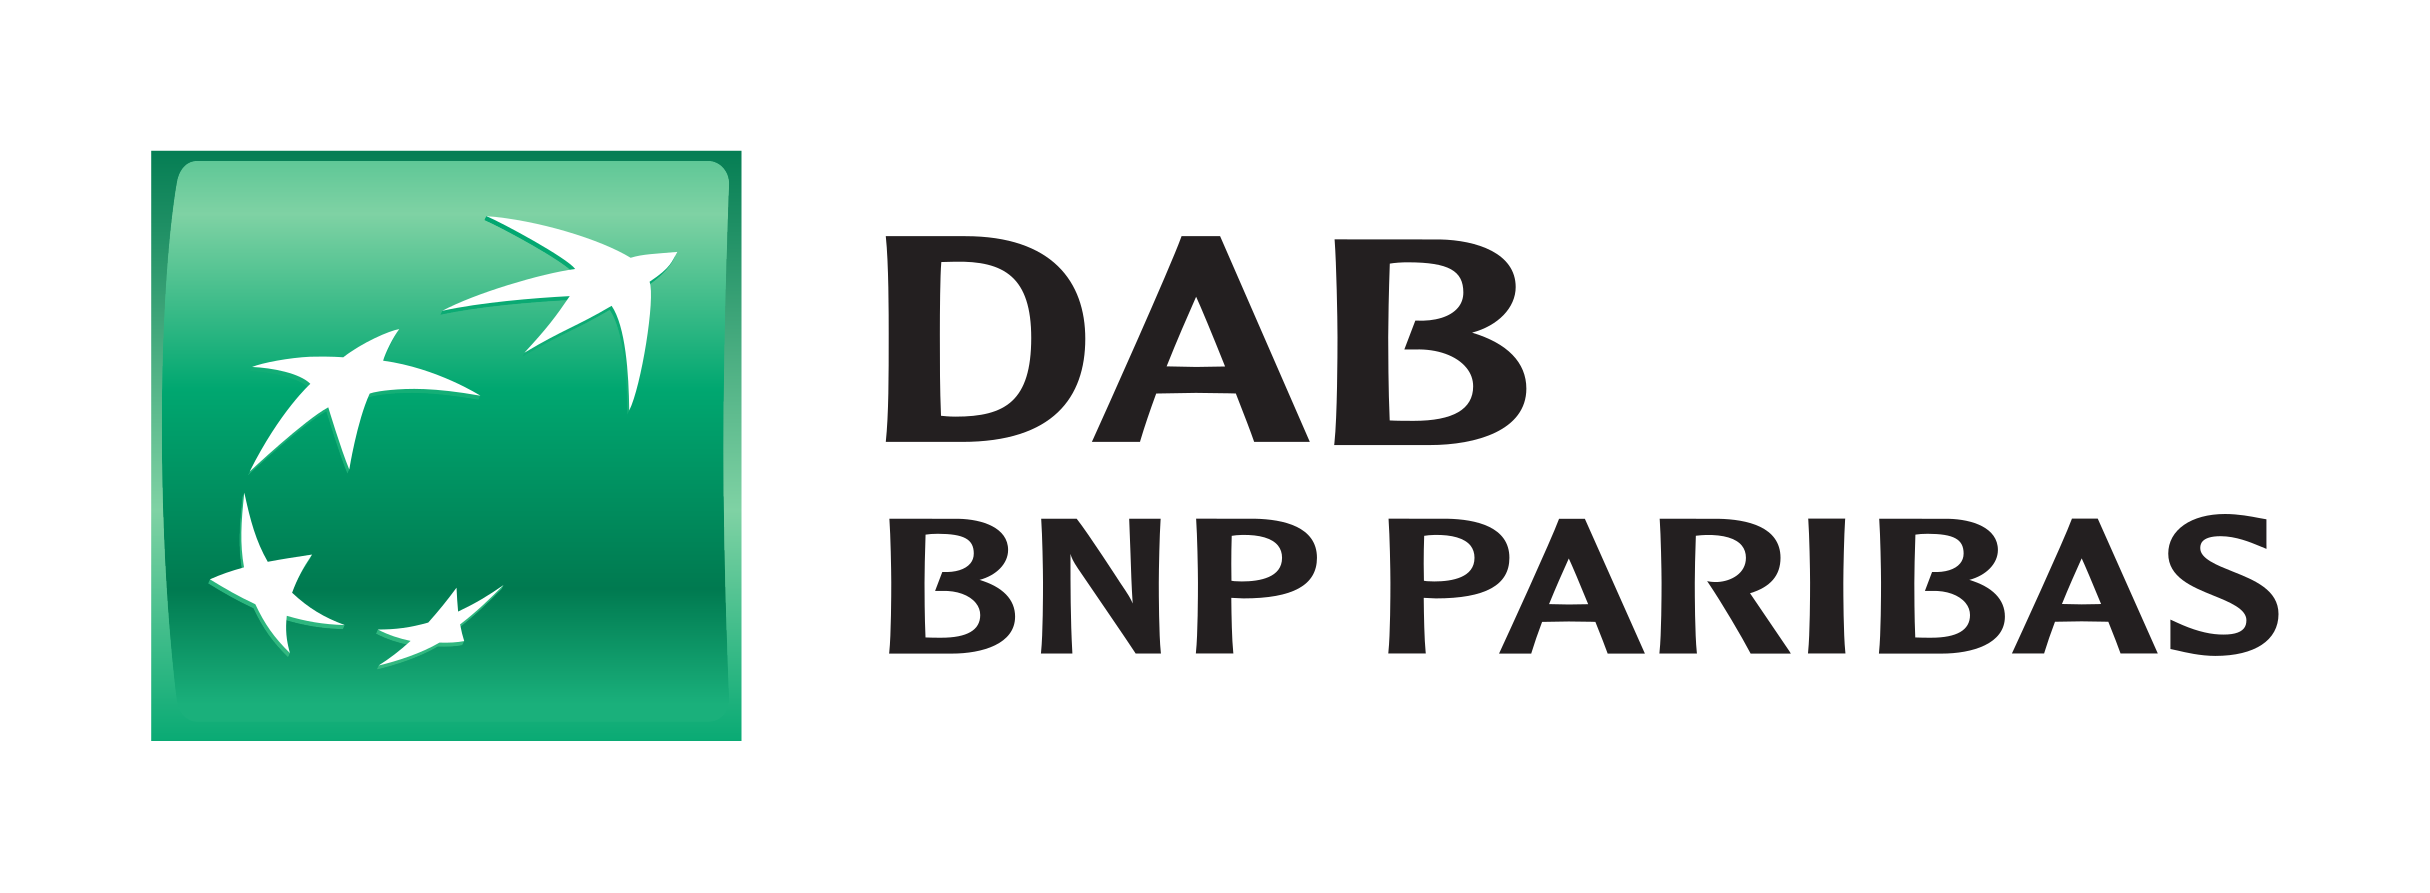 Von flatex zu DAB BNP Paribas umziehen